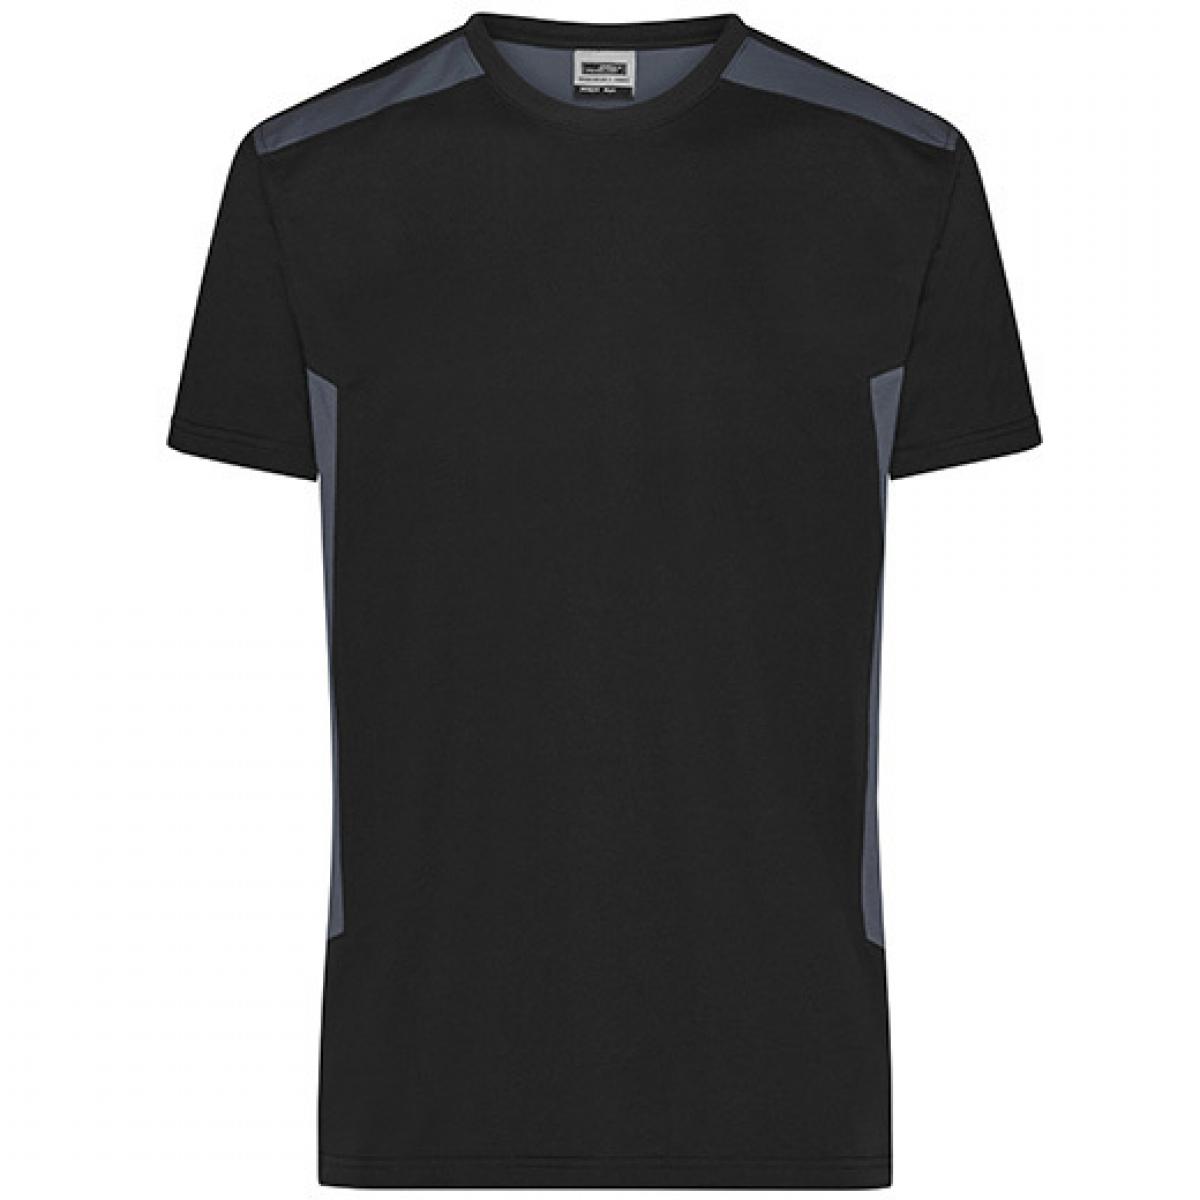 Hersteller: James+Nicholson Herstellernummer: JN1824 Artikelbezeichnung: Herren T, Men‘s Workwear T-Shirt -STRONG-Waschbar bis 60 °C Farbe: Black/Carbon